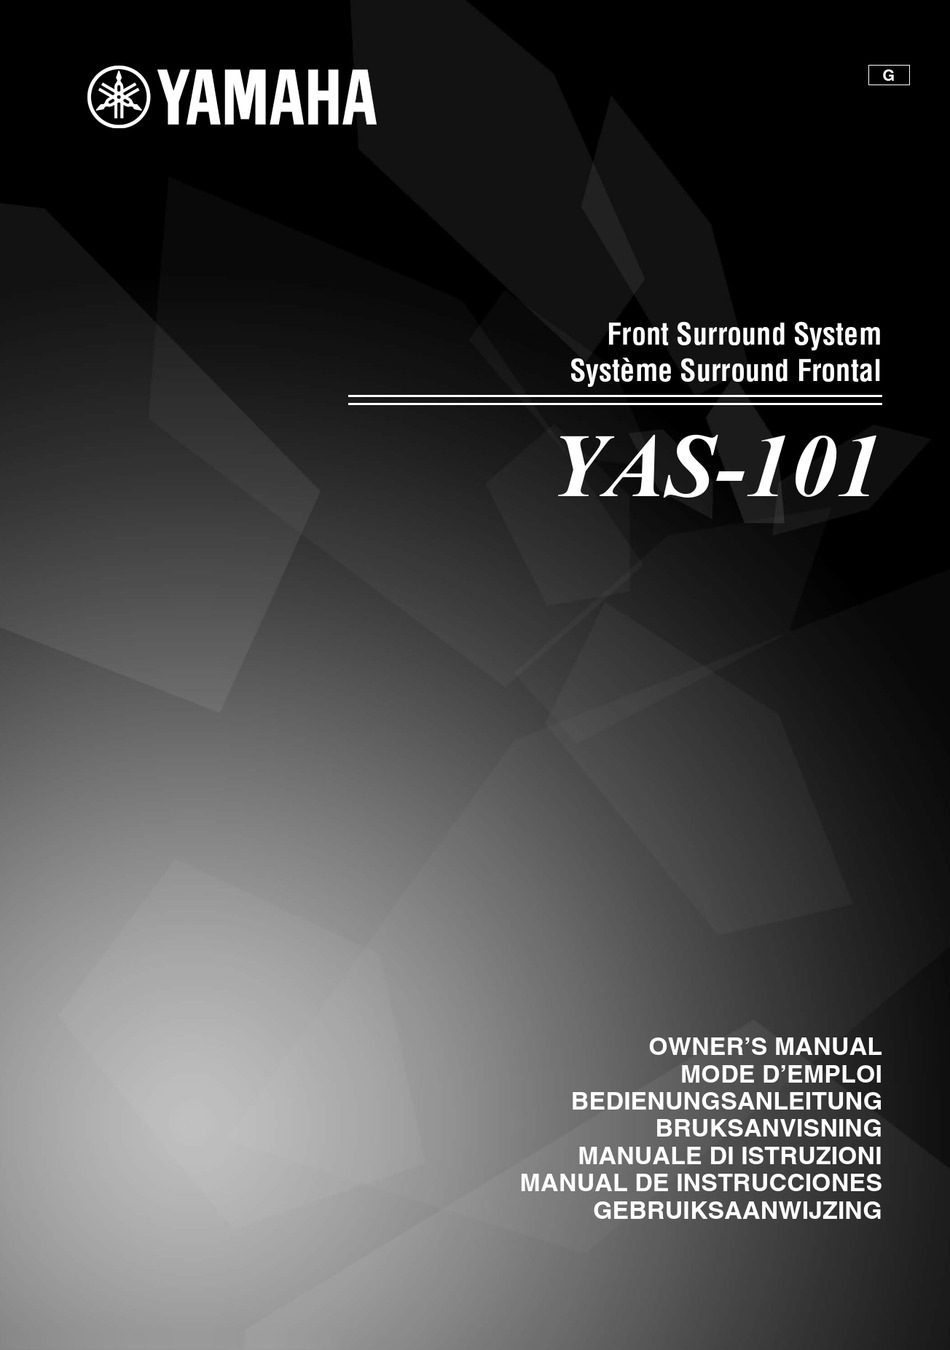 YAMAHA YAS-101 OWNER'S MANUAL Pdf Download | ManualsLib